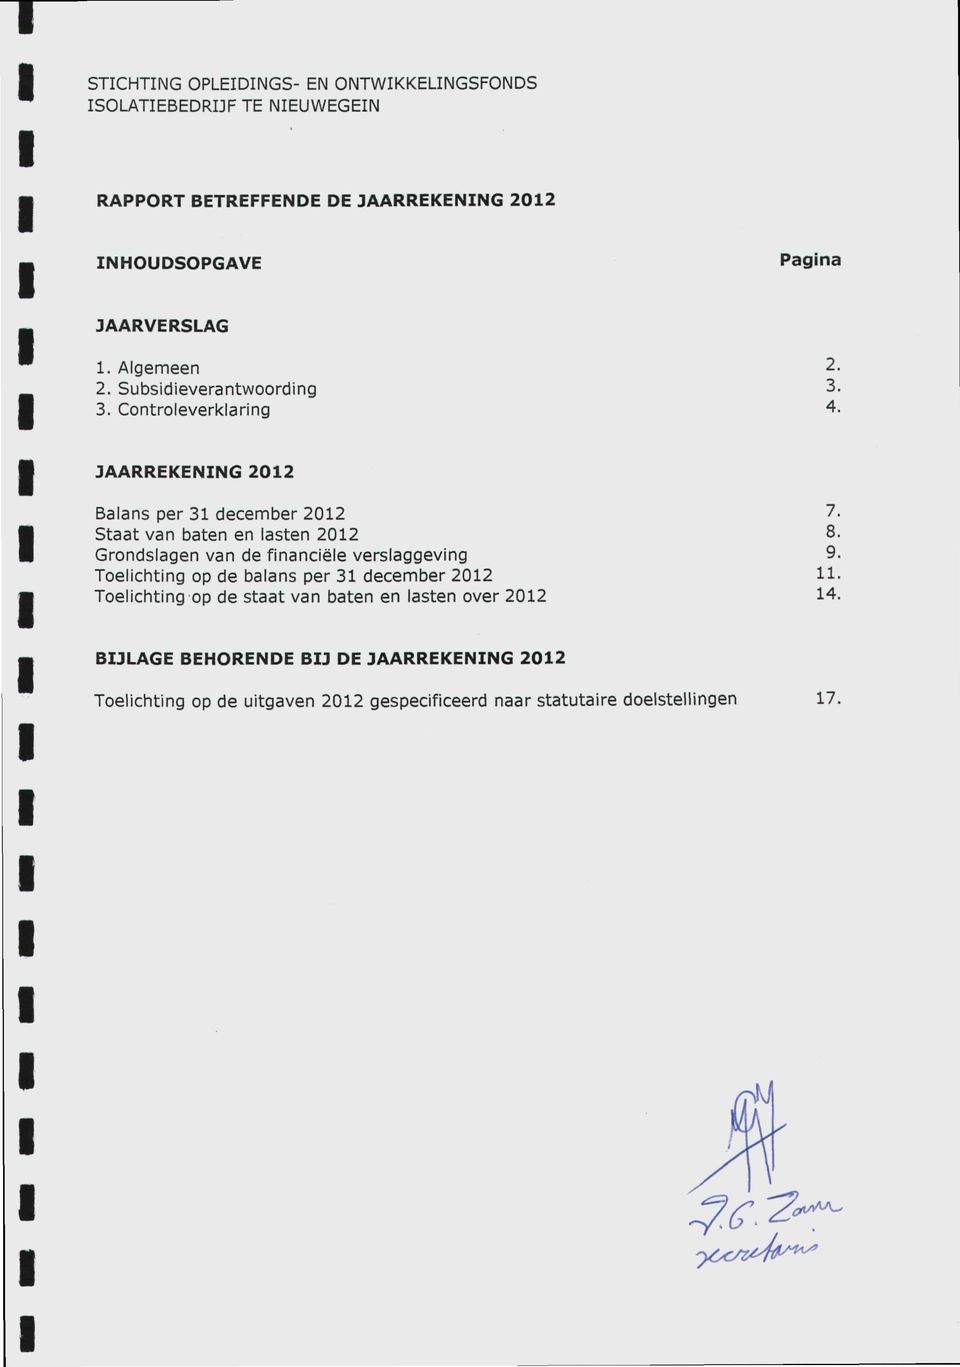 Grondslagen van de financiëie verslaggeving 9. Toelichting op de balans per 31 december 2012 11.